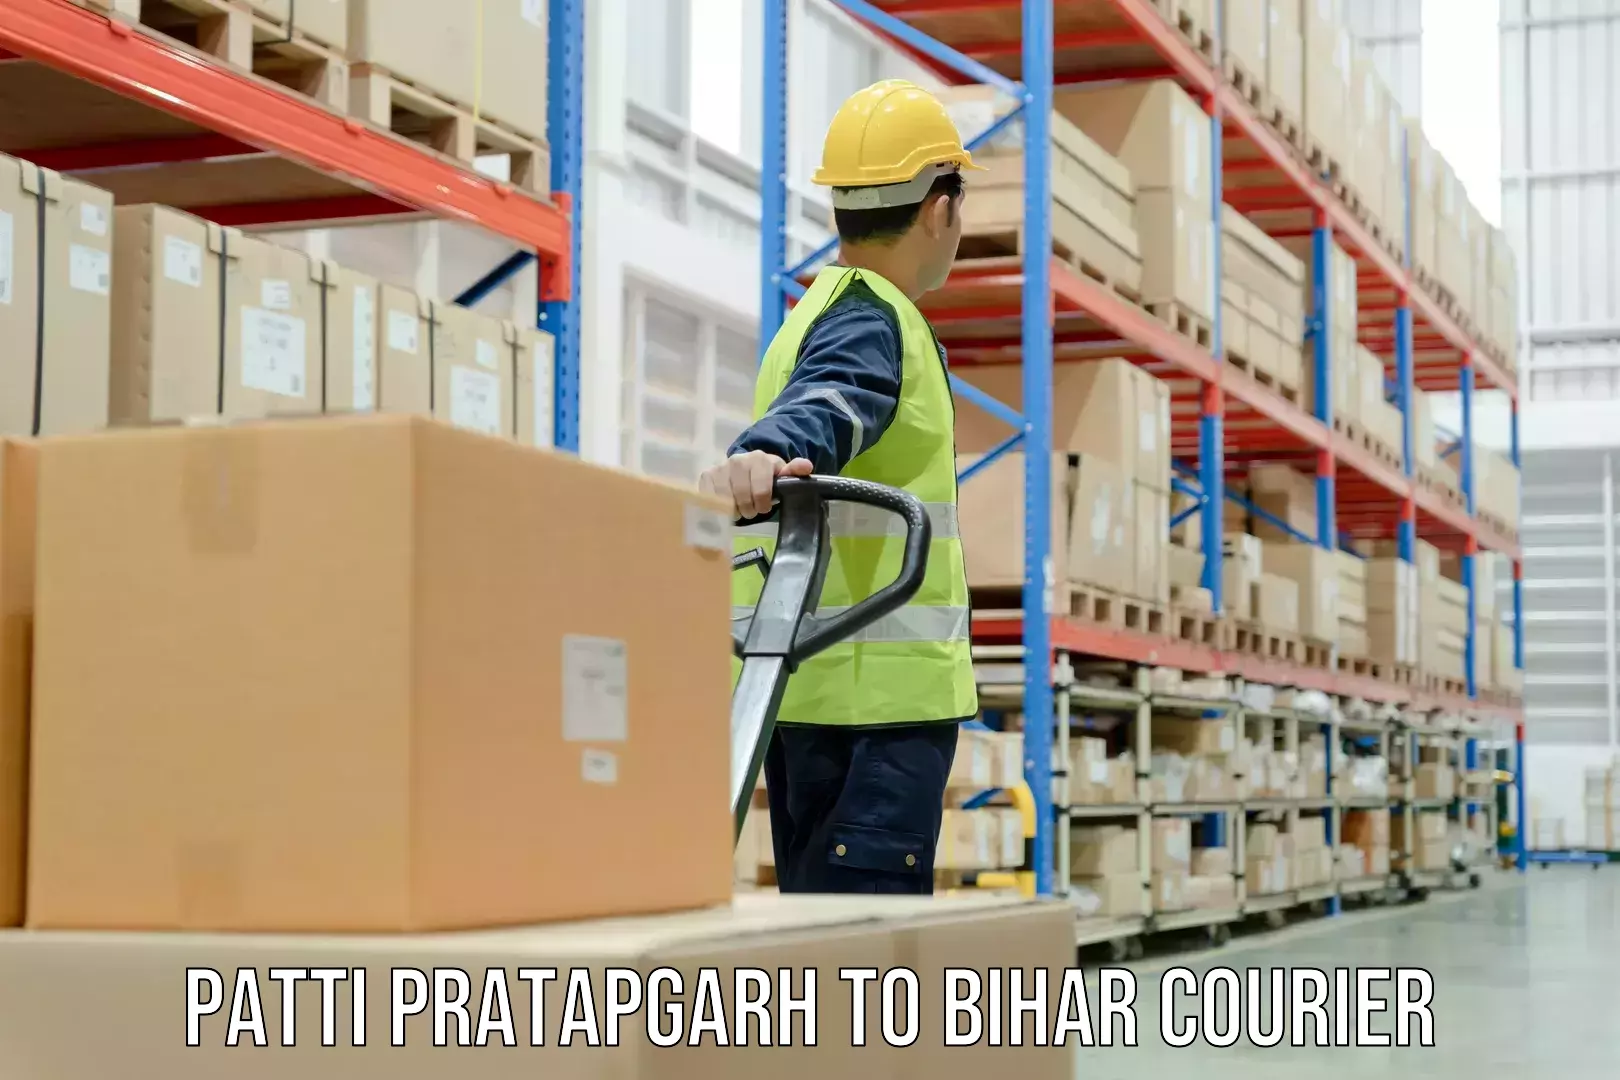 Flexible delivery schedules in Patti Pratapgarh to Forbesganj